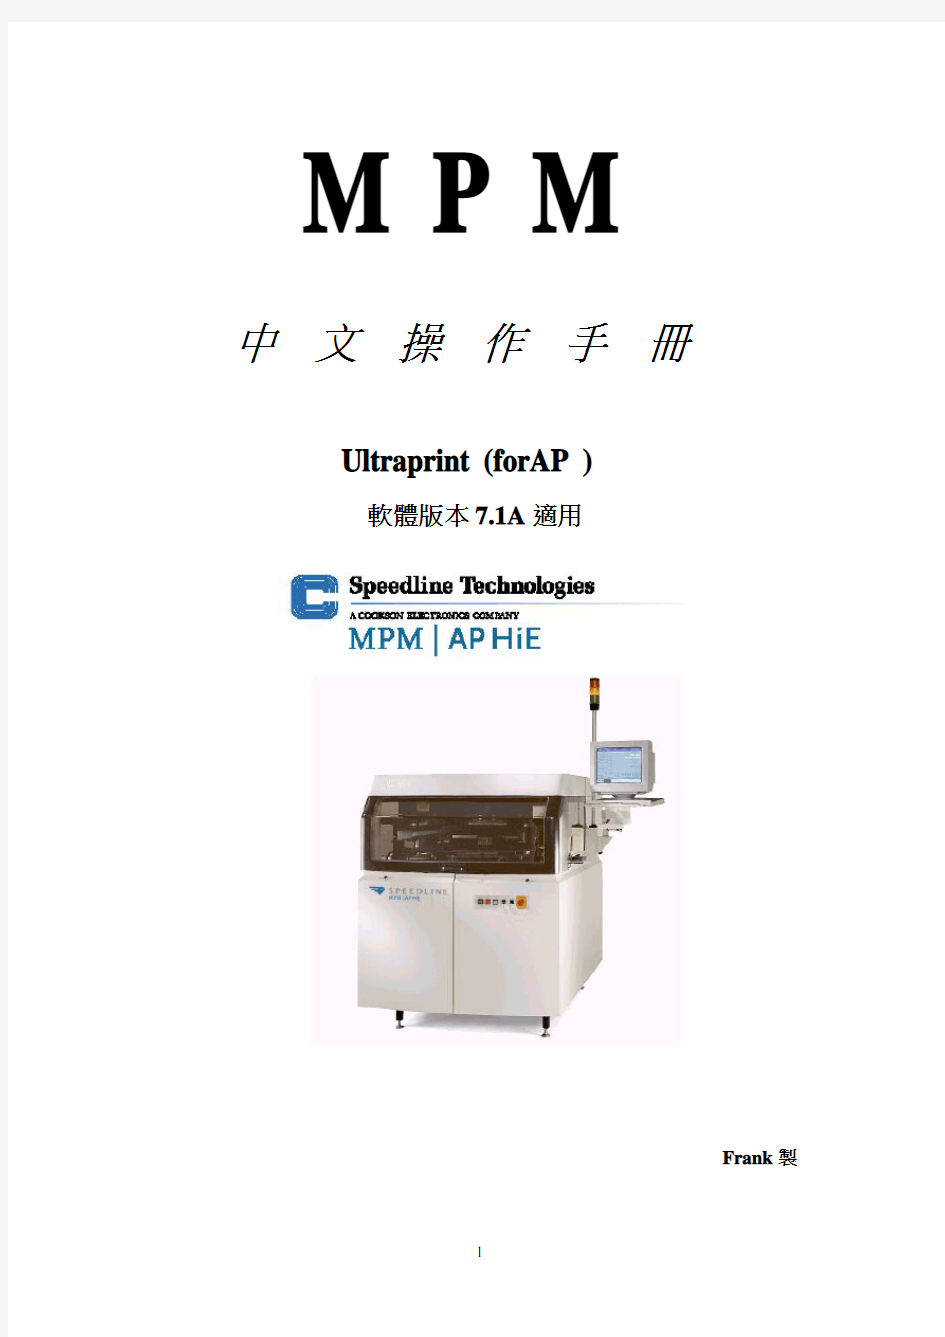 MPM全自动印刷机中文操作手册